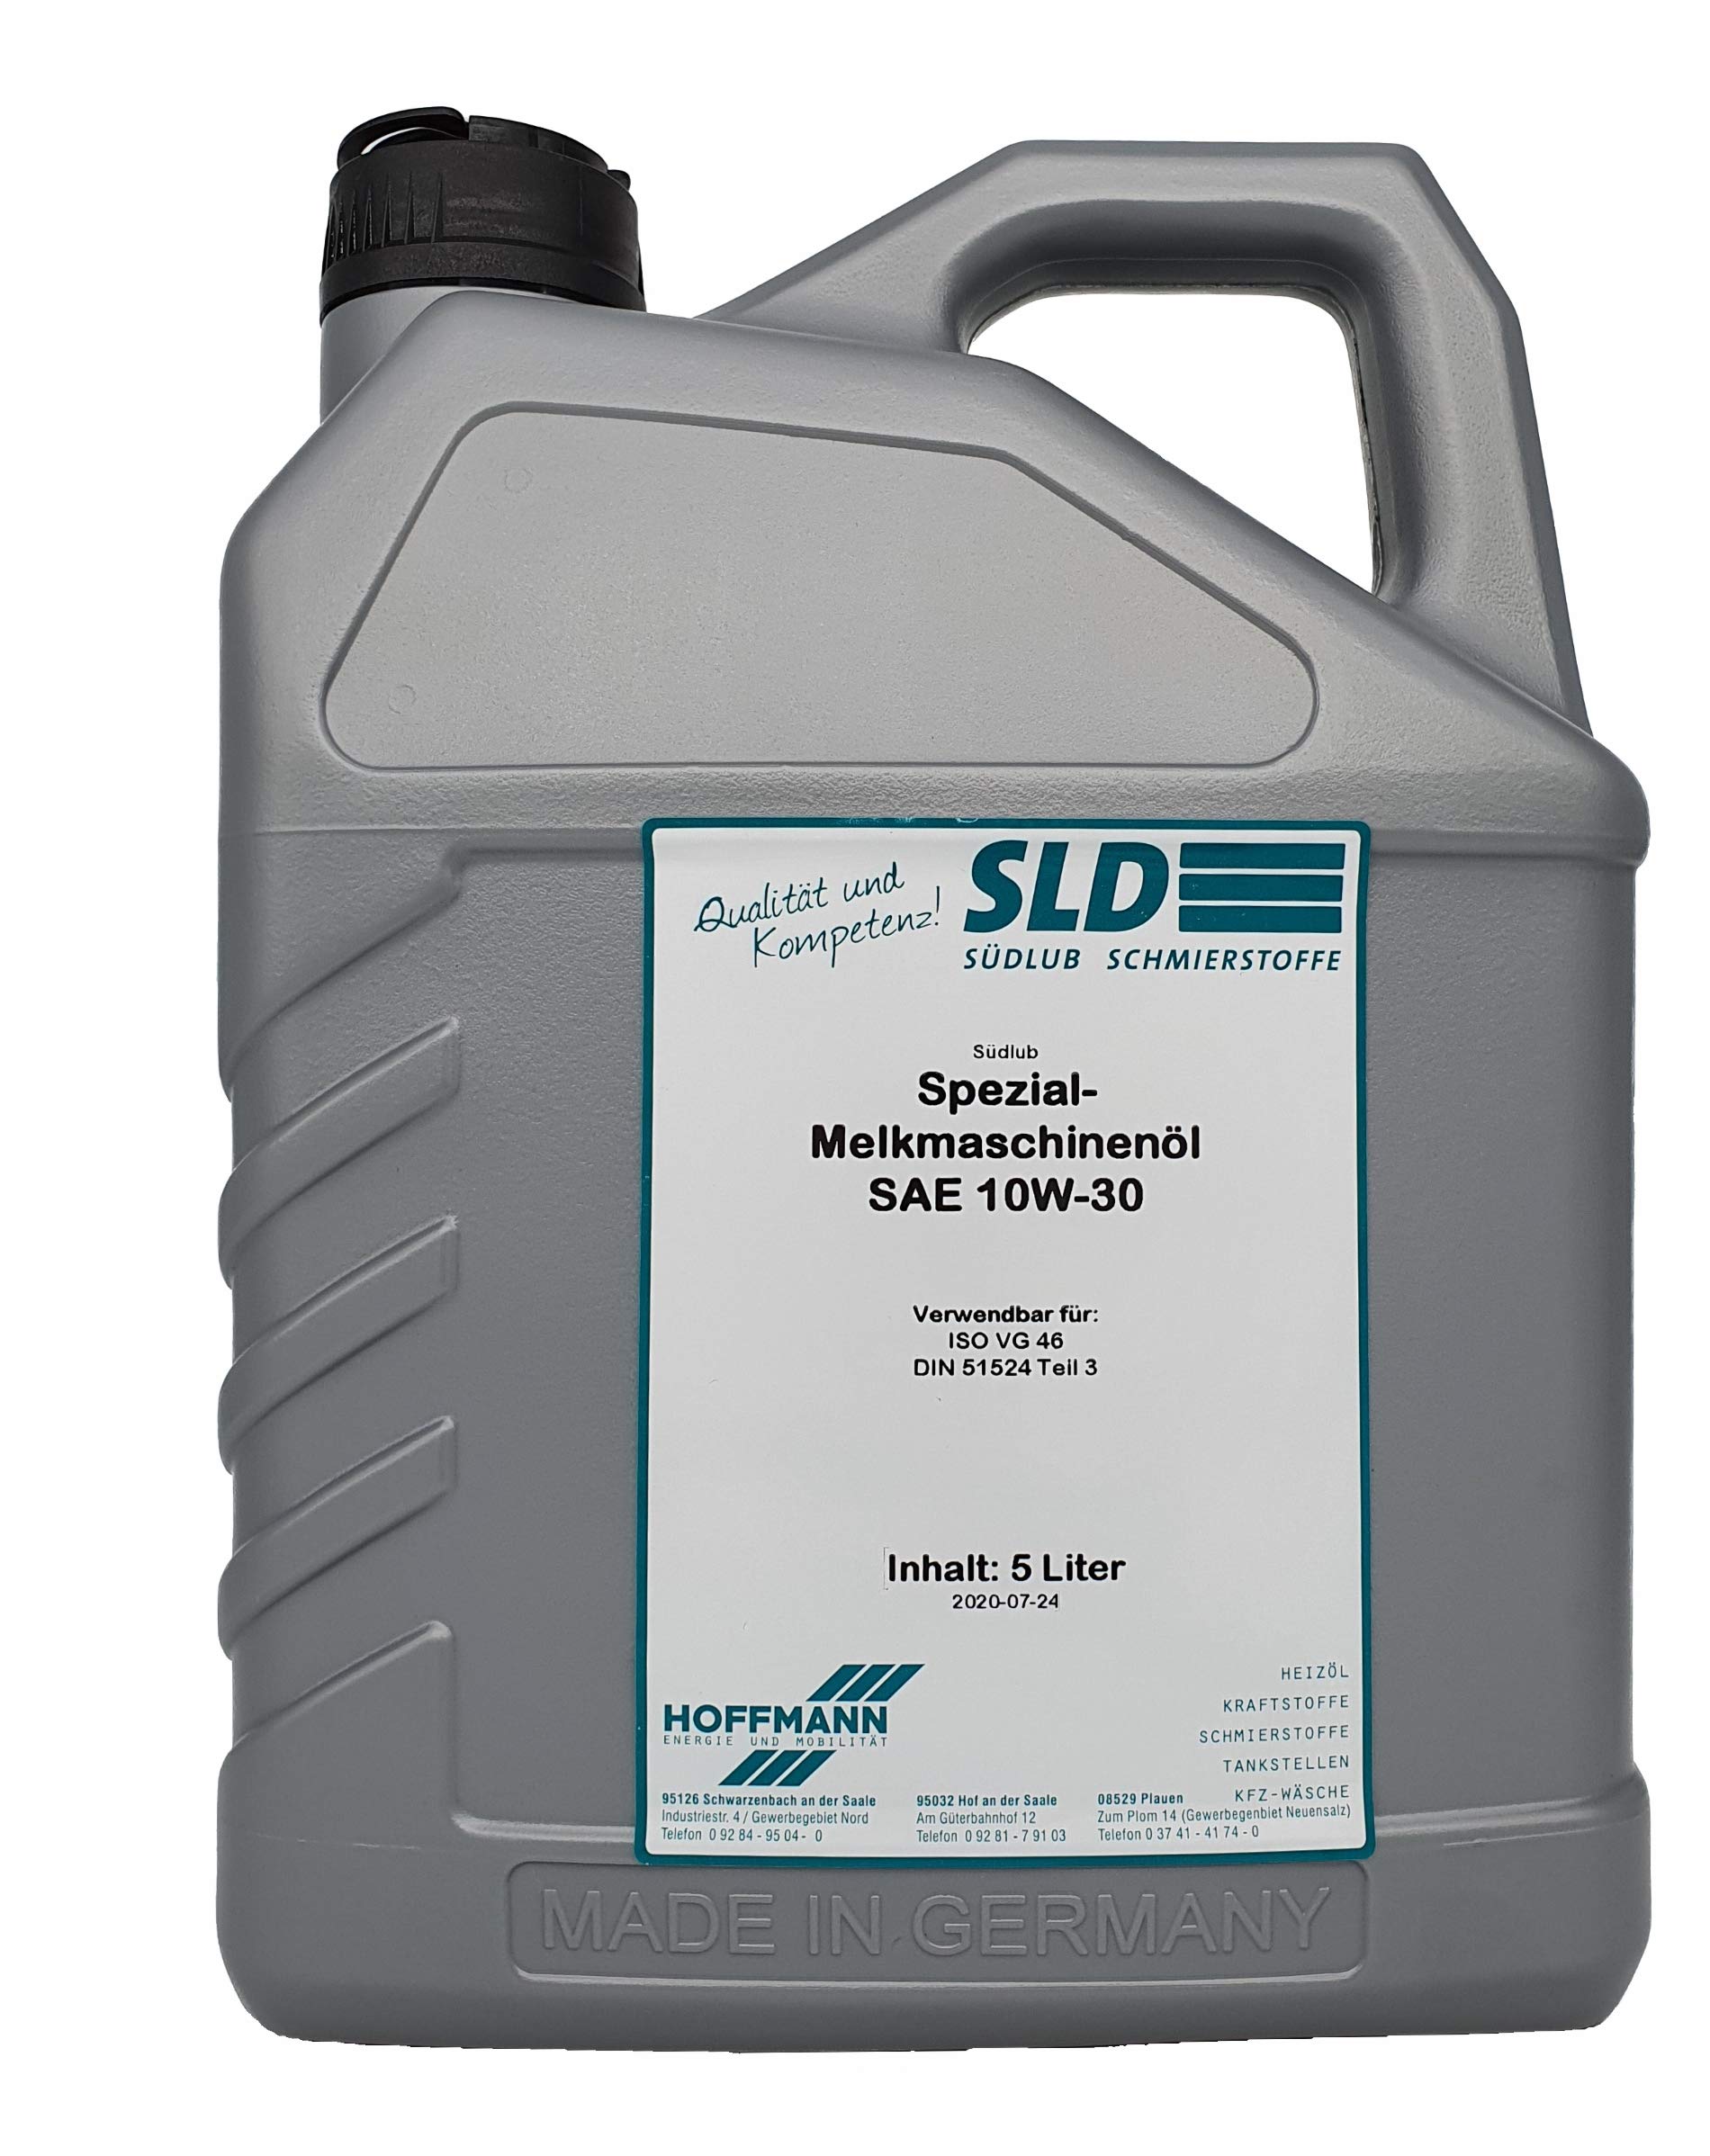 Südlub Spezial-Melkmaschinenöl SAE 10W-30, 5 Liter von SLD Südlub Schmierstoffe